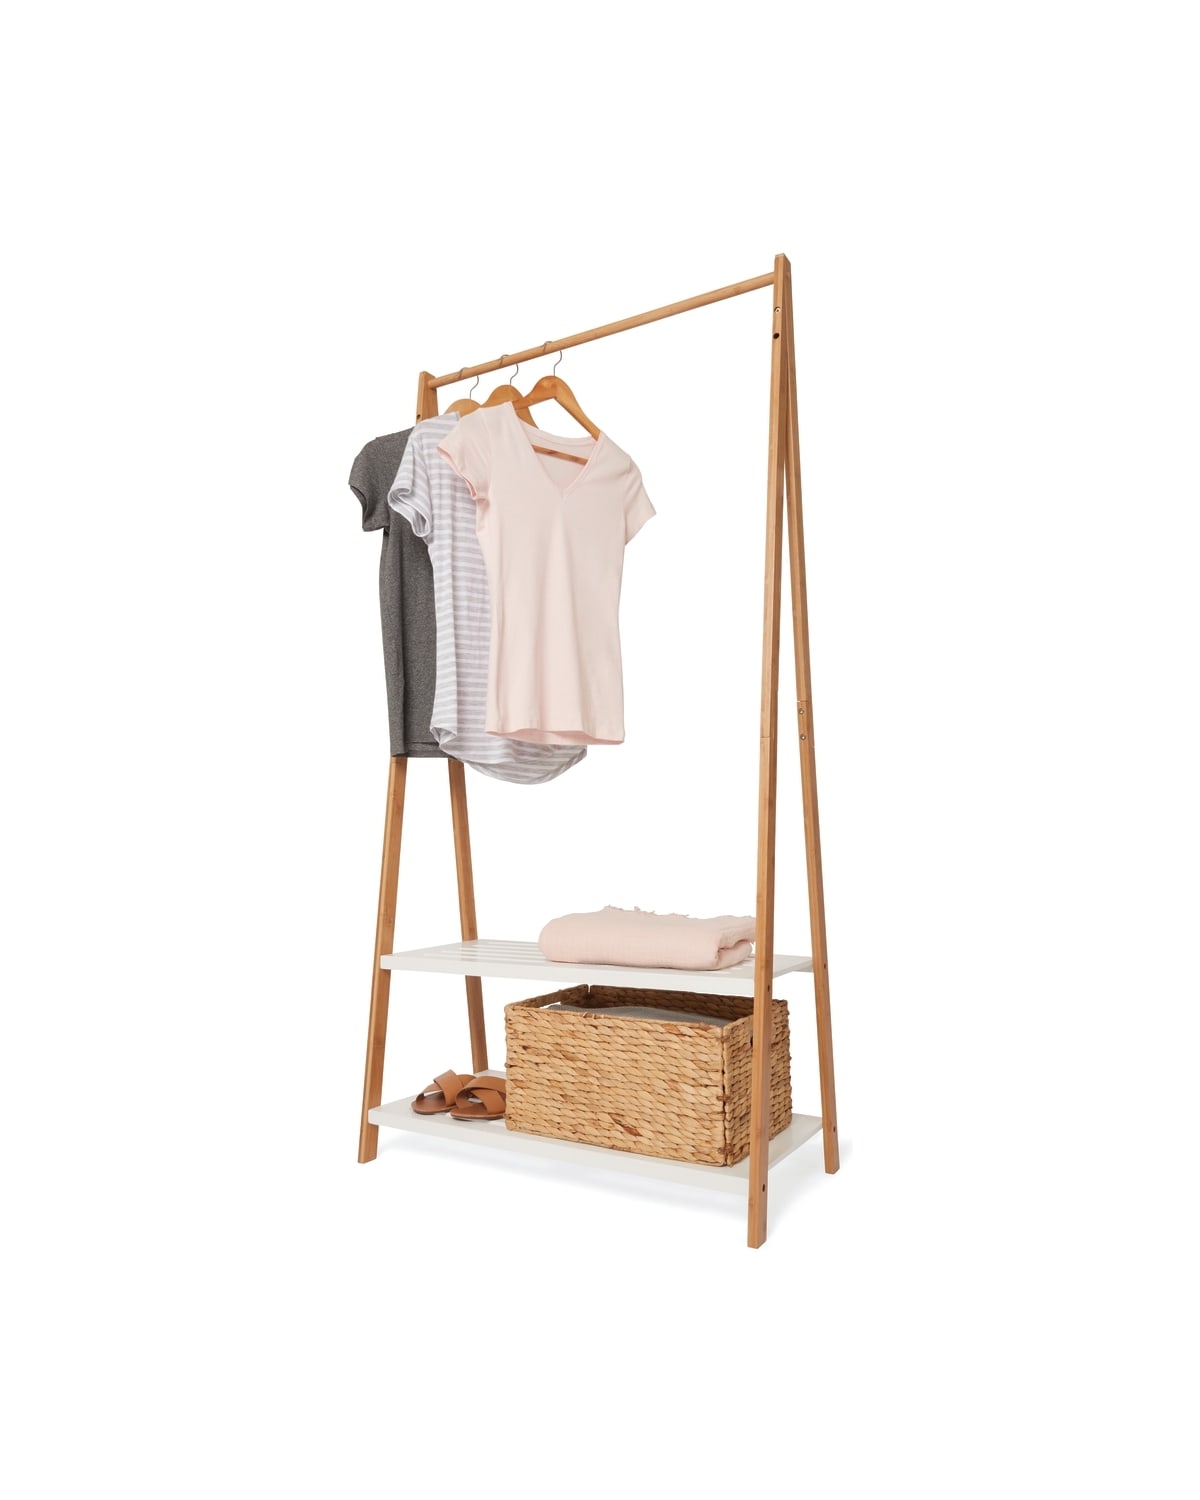 Bamboo Garment Rack with White Shelves - Kmart